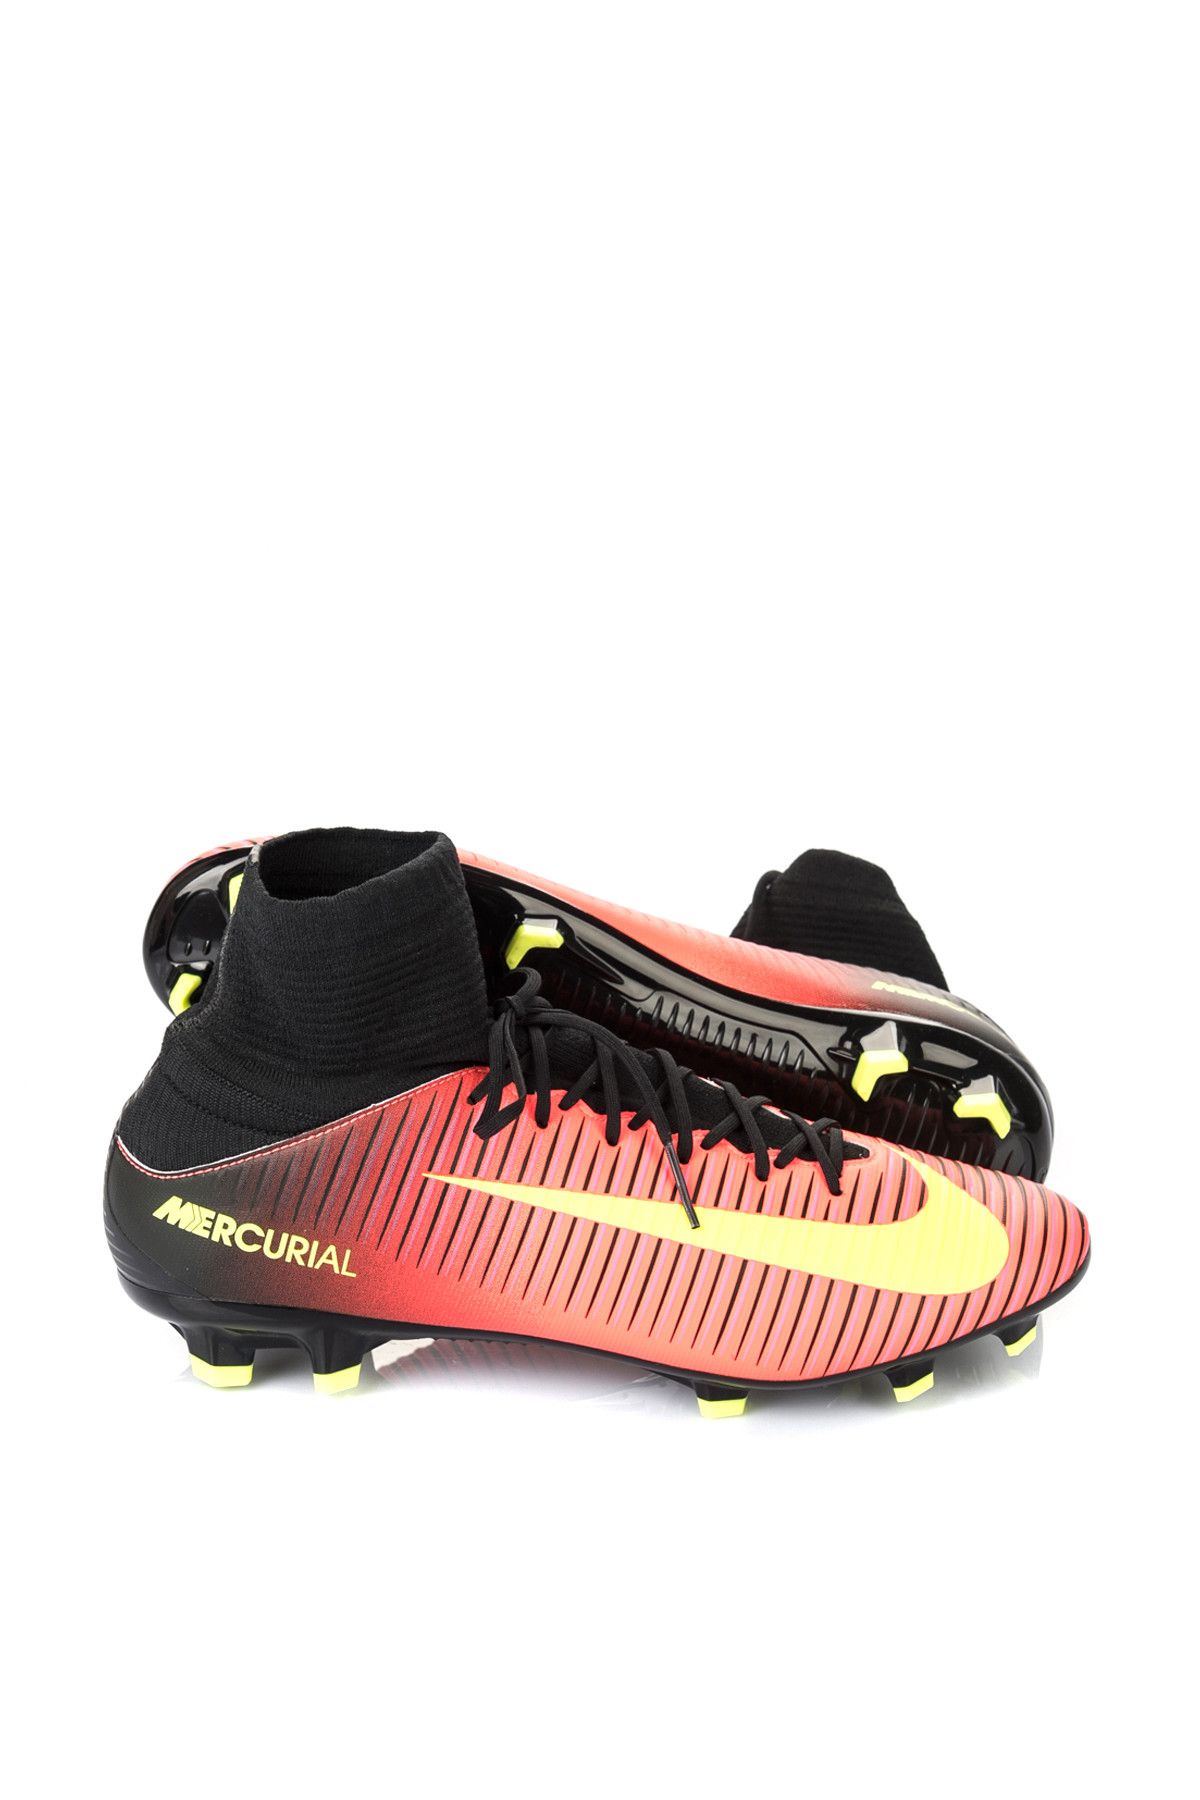 Nike Erkek Futbol Ayakkabı - Mercurial Veloce iii Df Fg - 831961-870